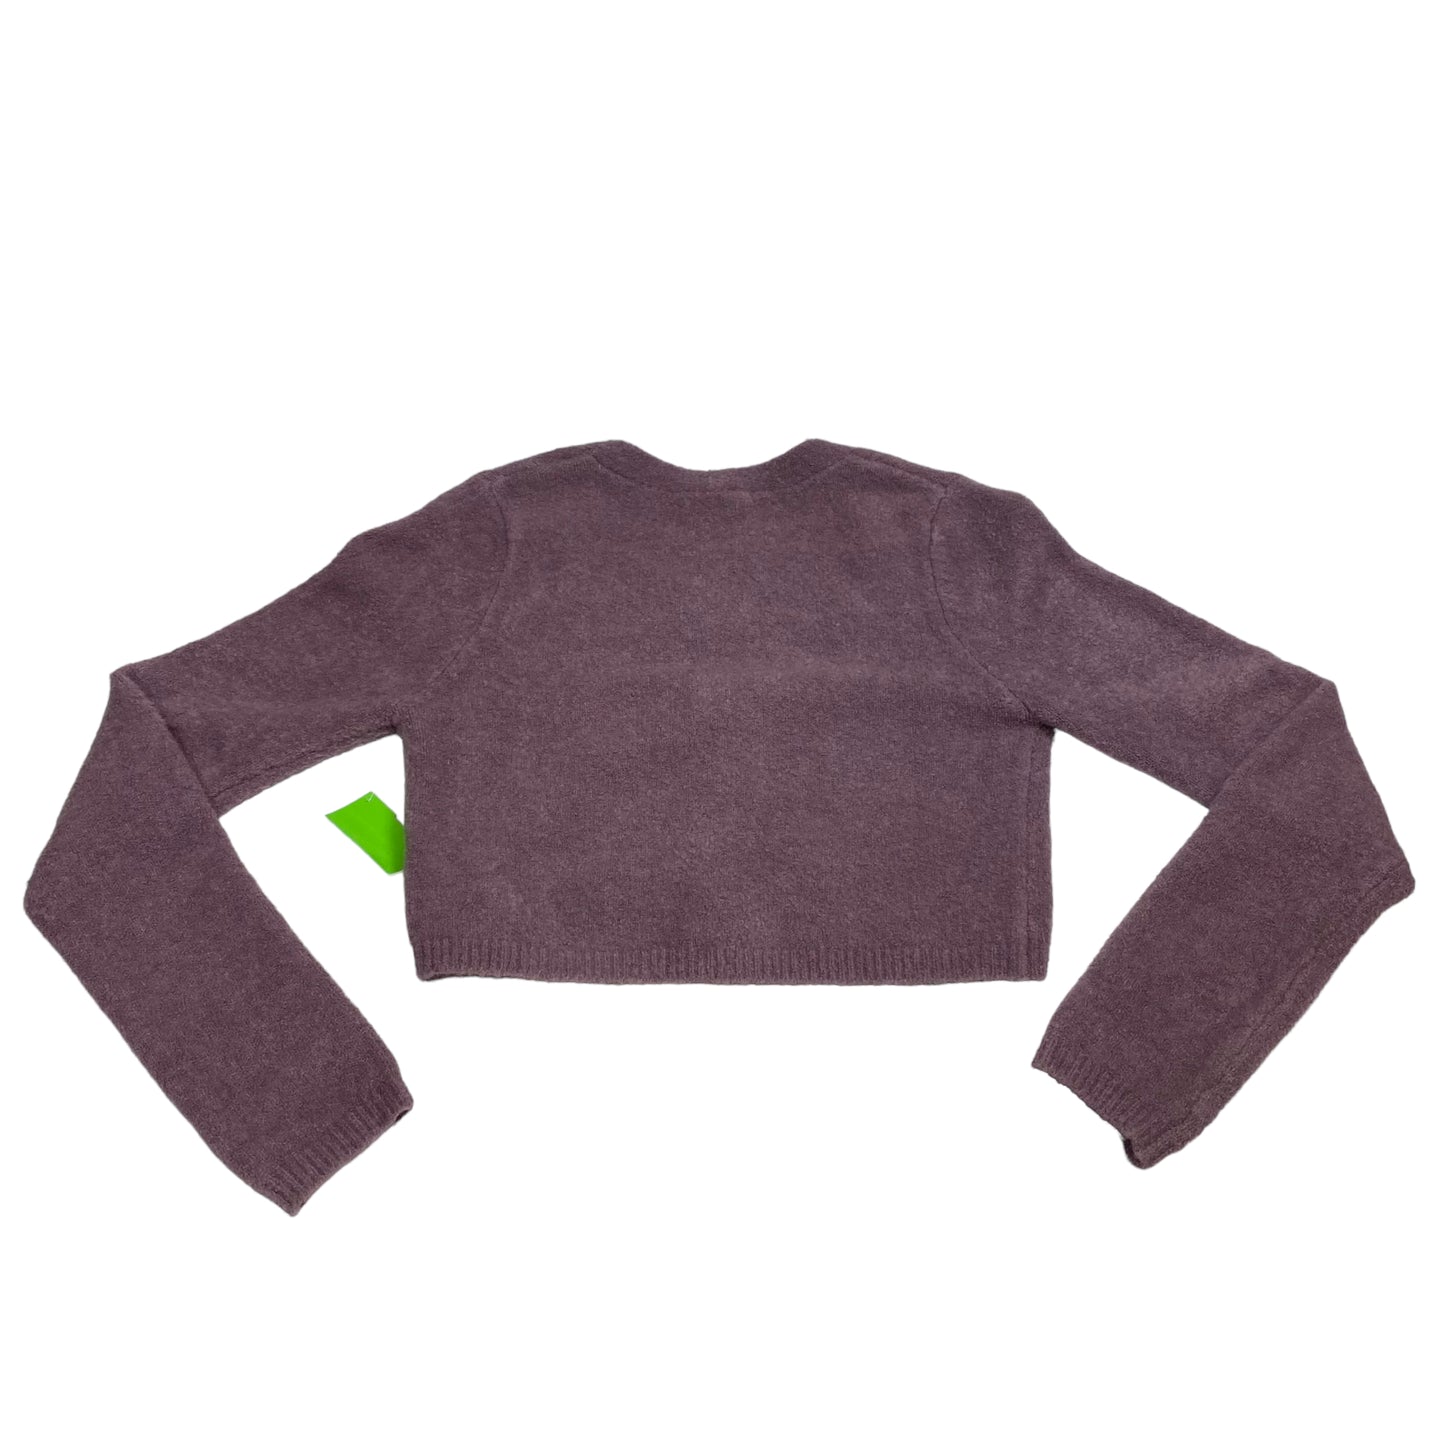 Sweater Cardigan By Zara  Size: M